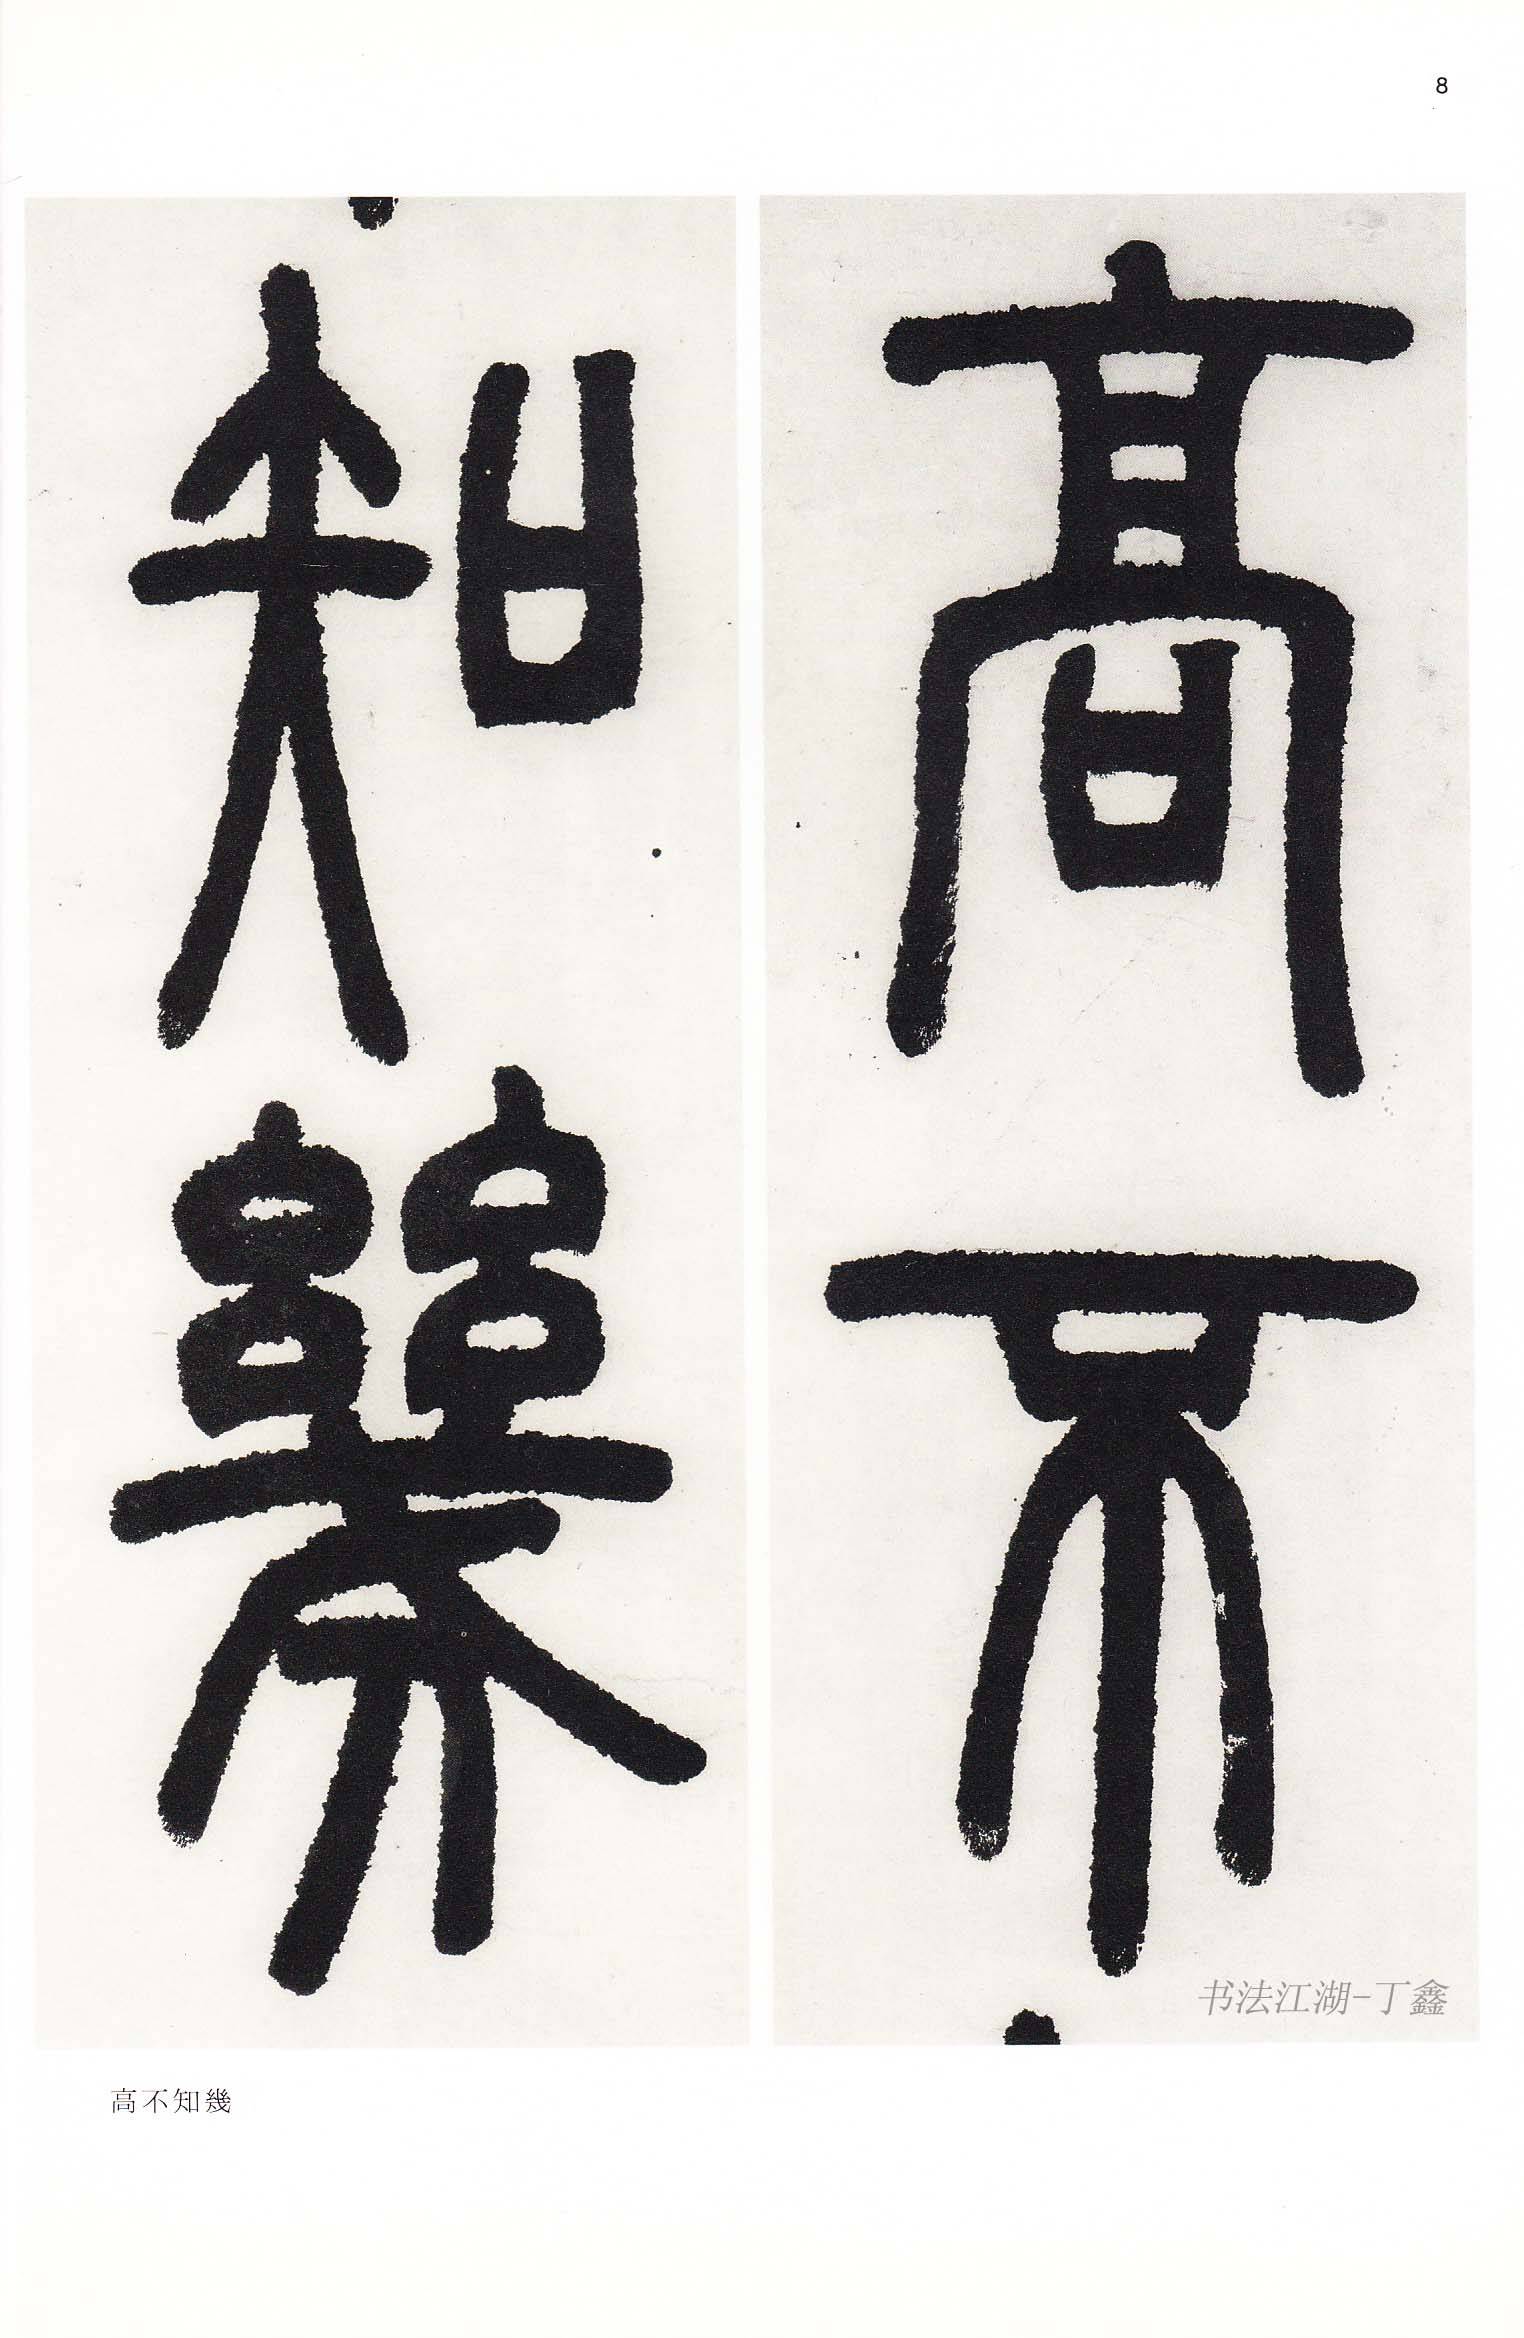 篆刻名家书法大师邓石如:艺术成就卓著,被誉为清代书法第一人